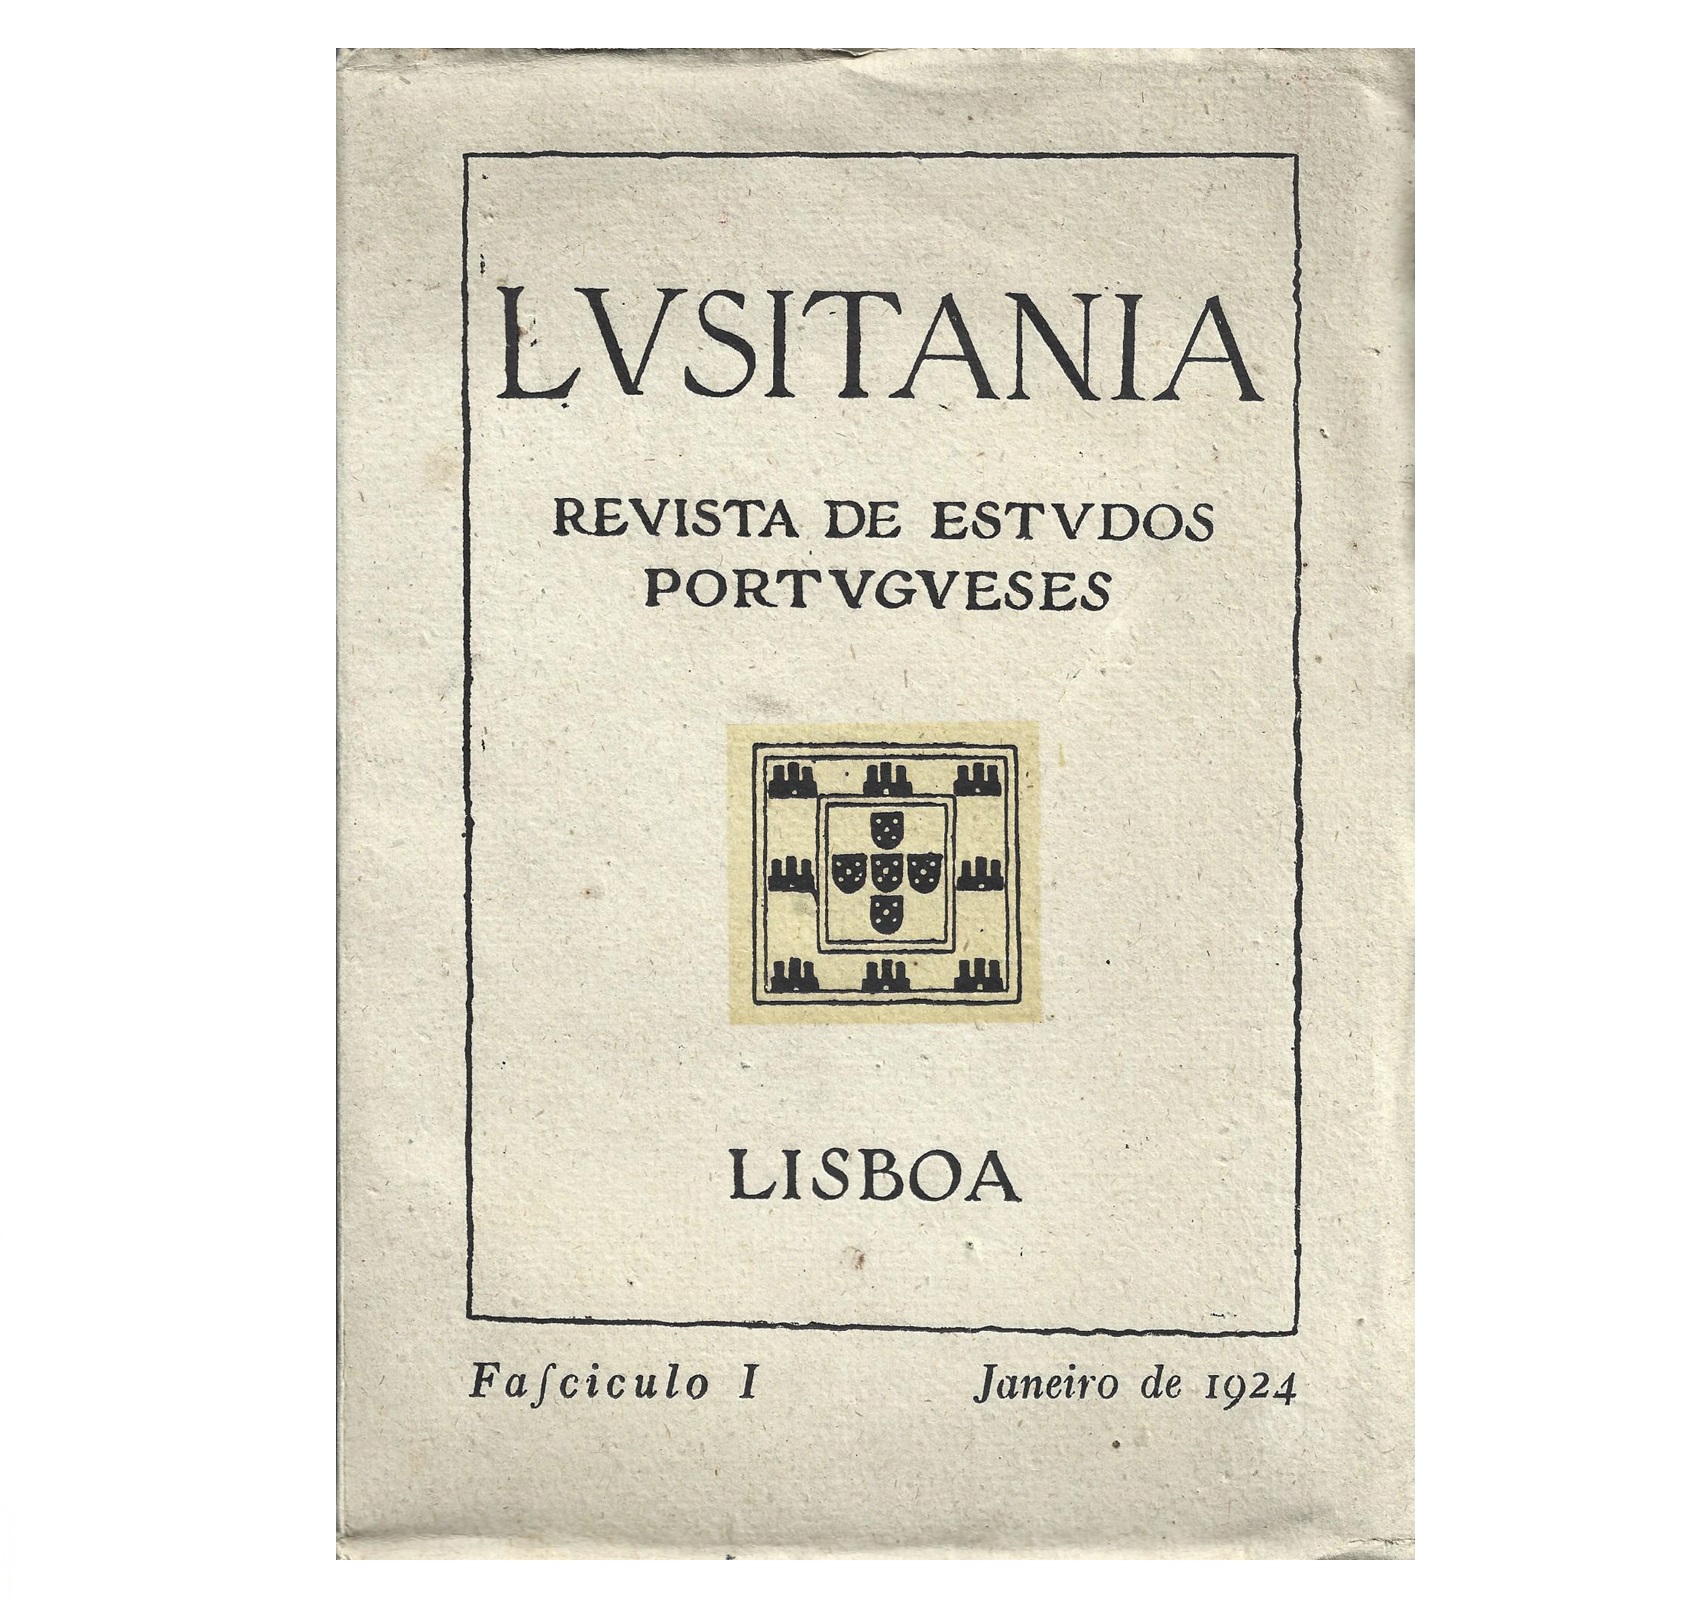 LUSITANIA FASC. 1 (JAN. 1924). 